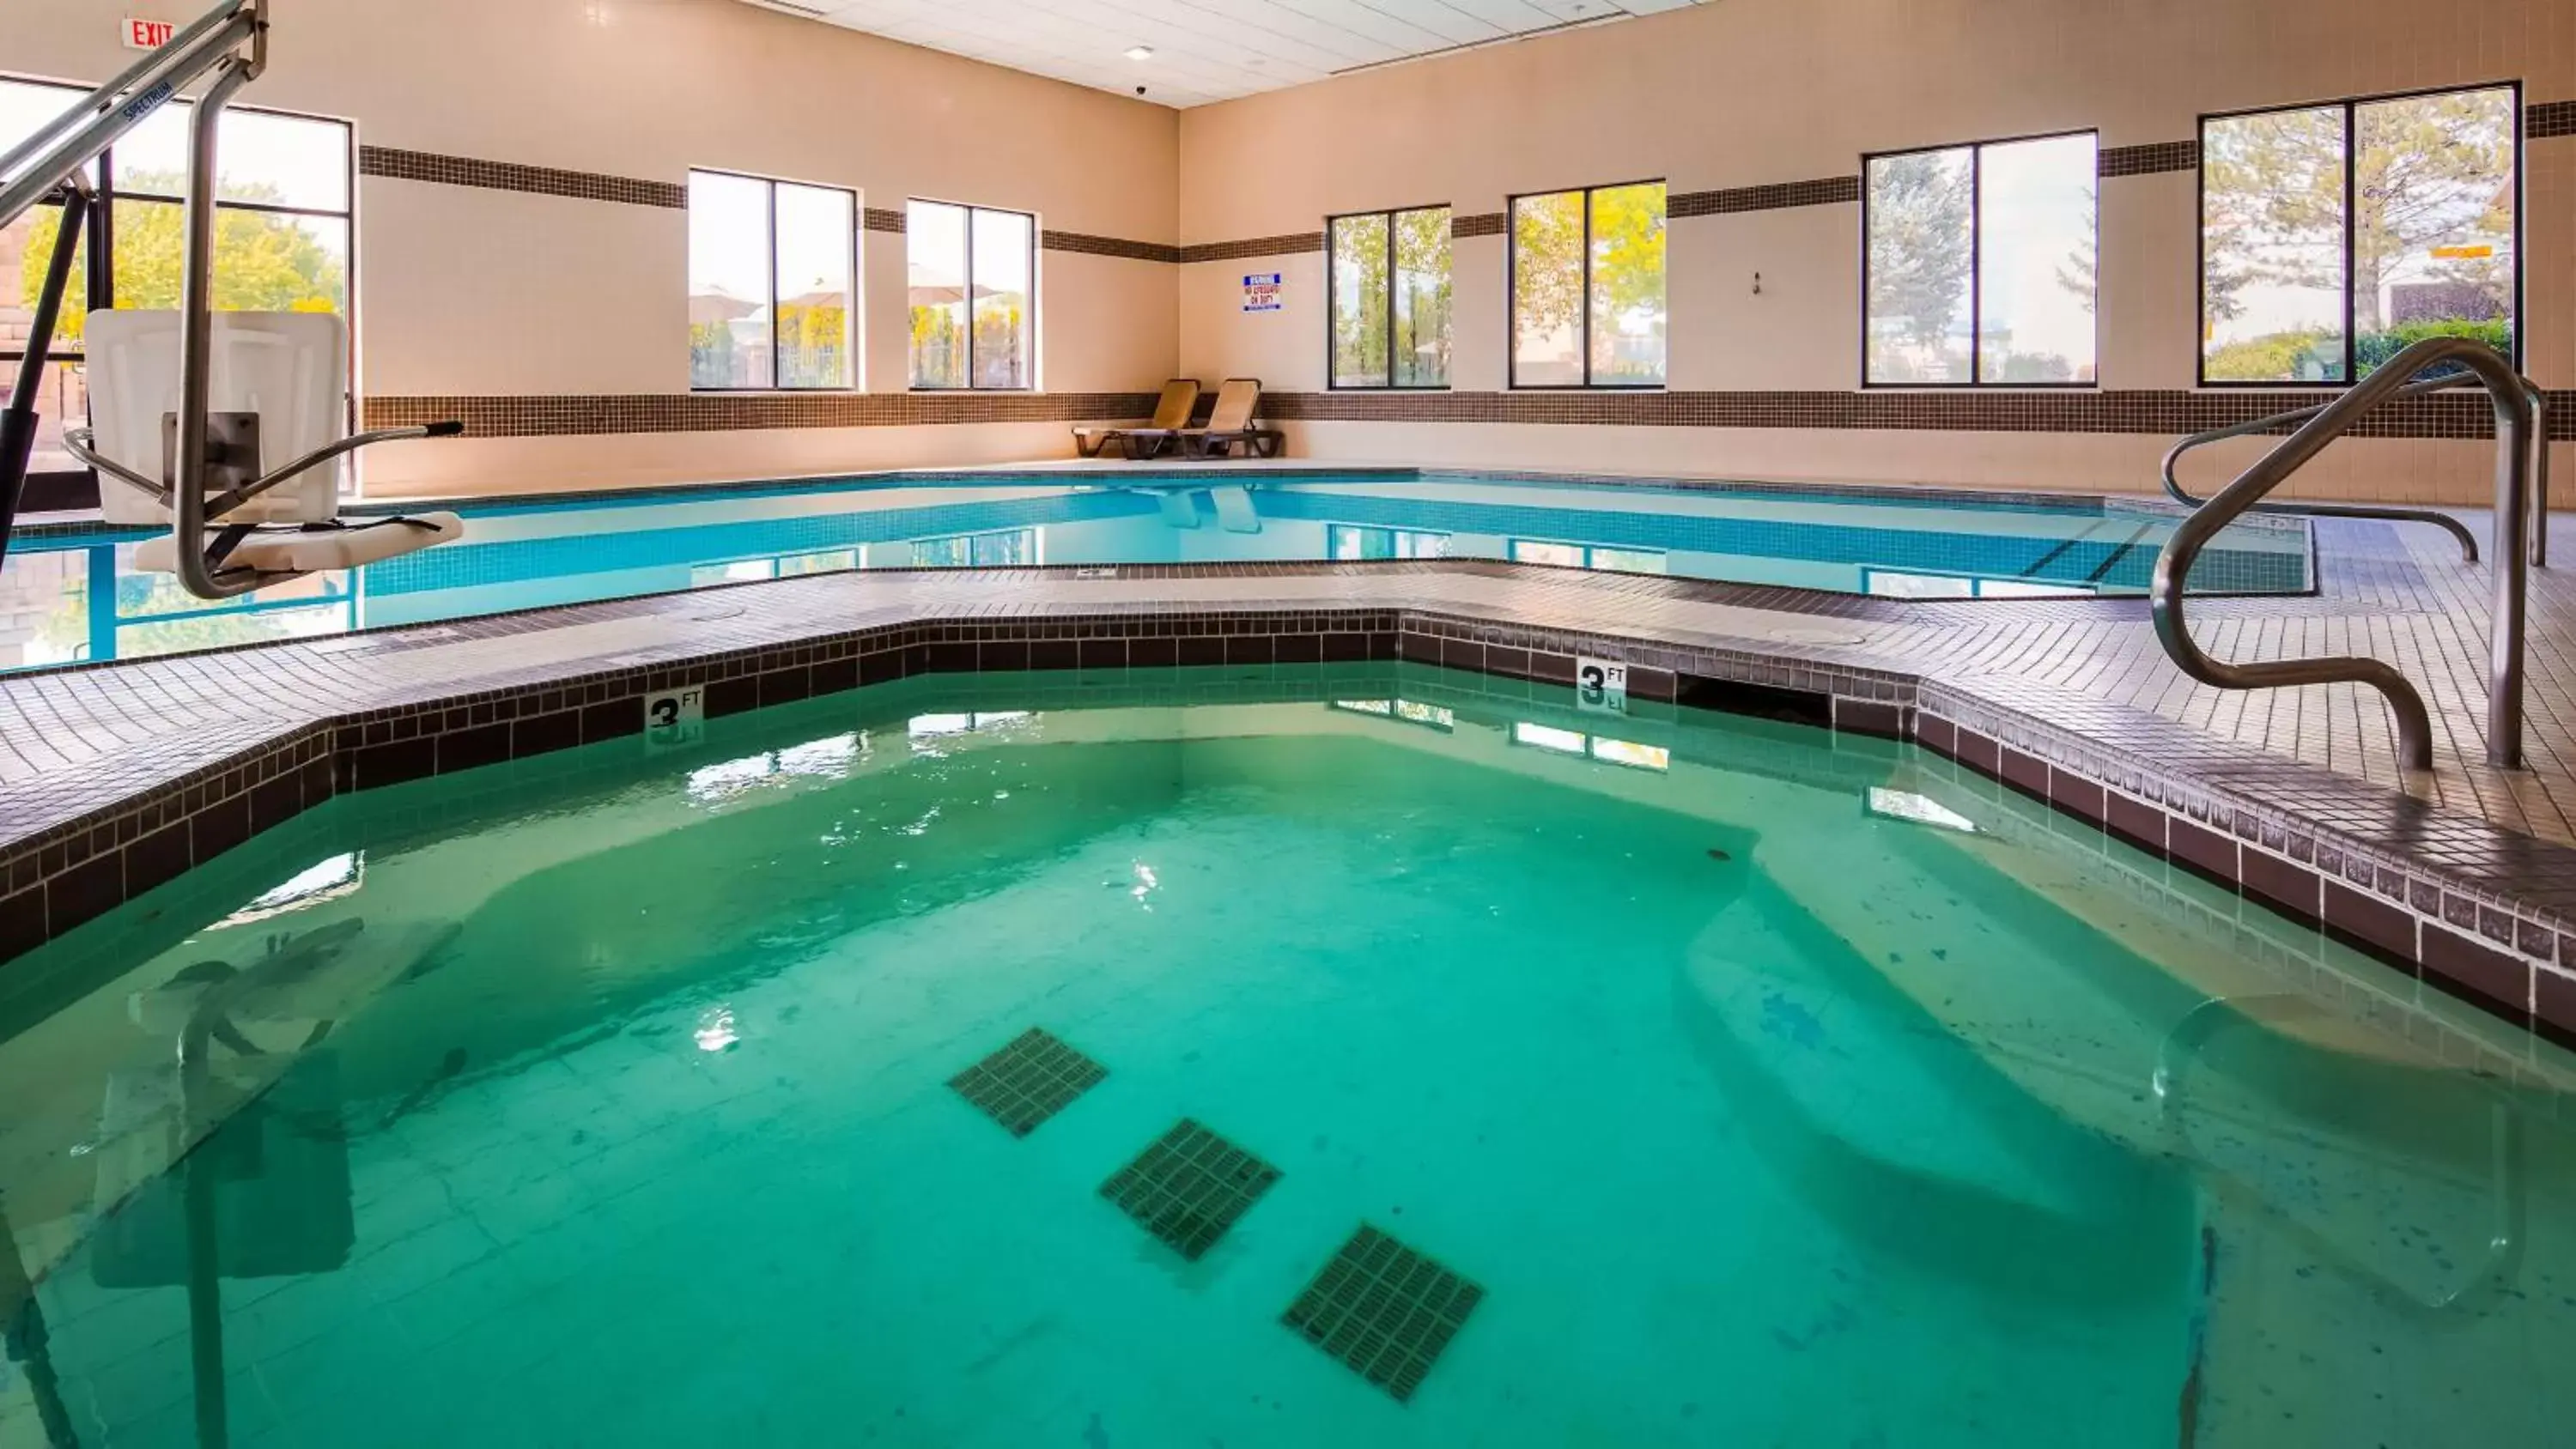 On site, Swimming Pool in Best Western Elko Inn